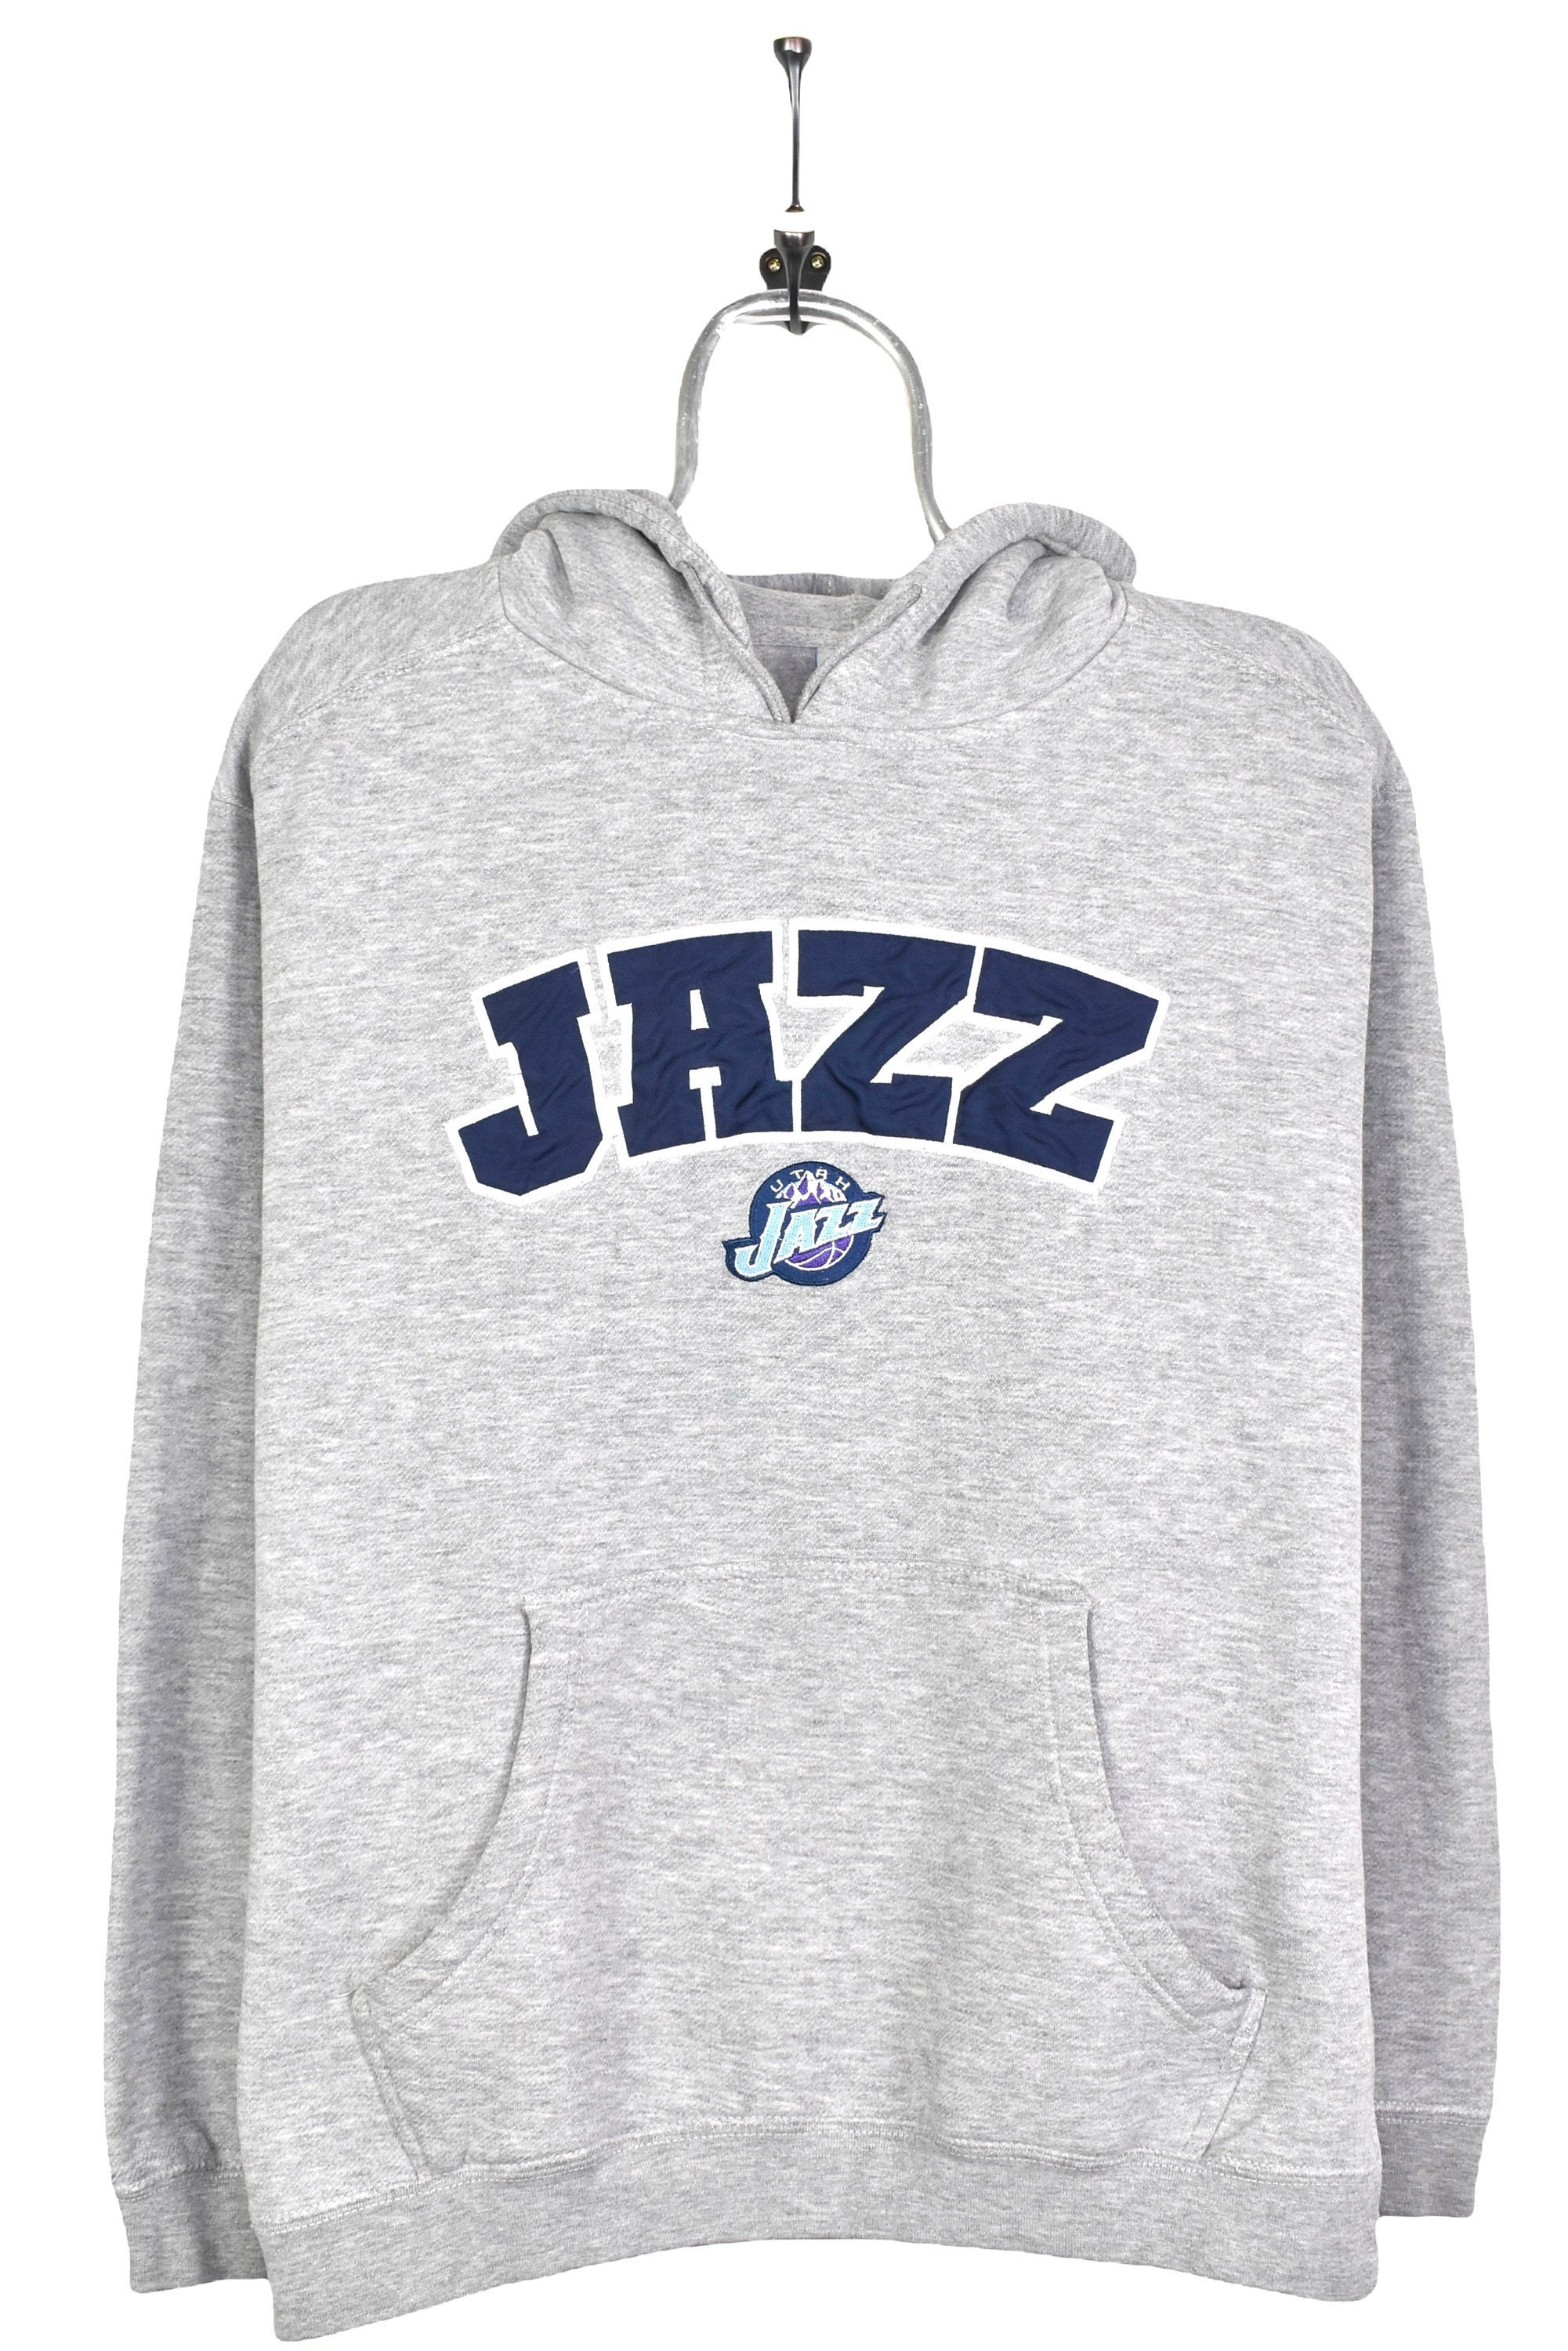 Utah Jazz X Warren Lotas Shirt, hoodie, longsleeve tee, sweater